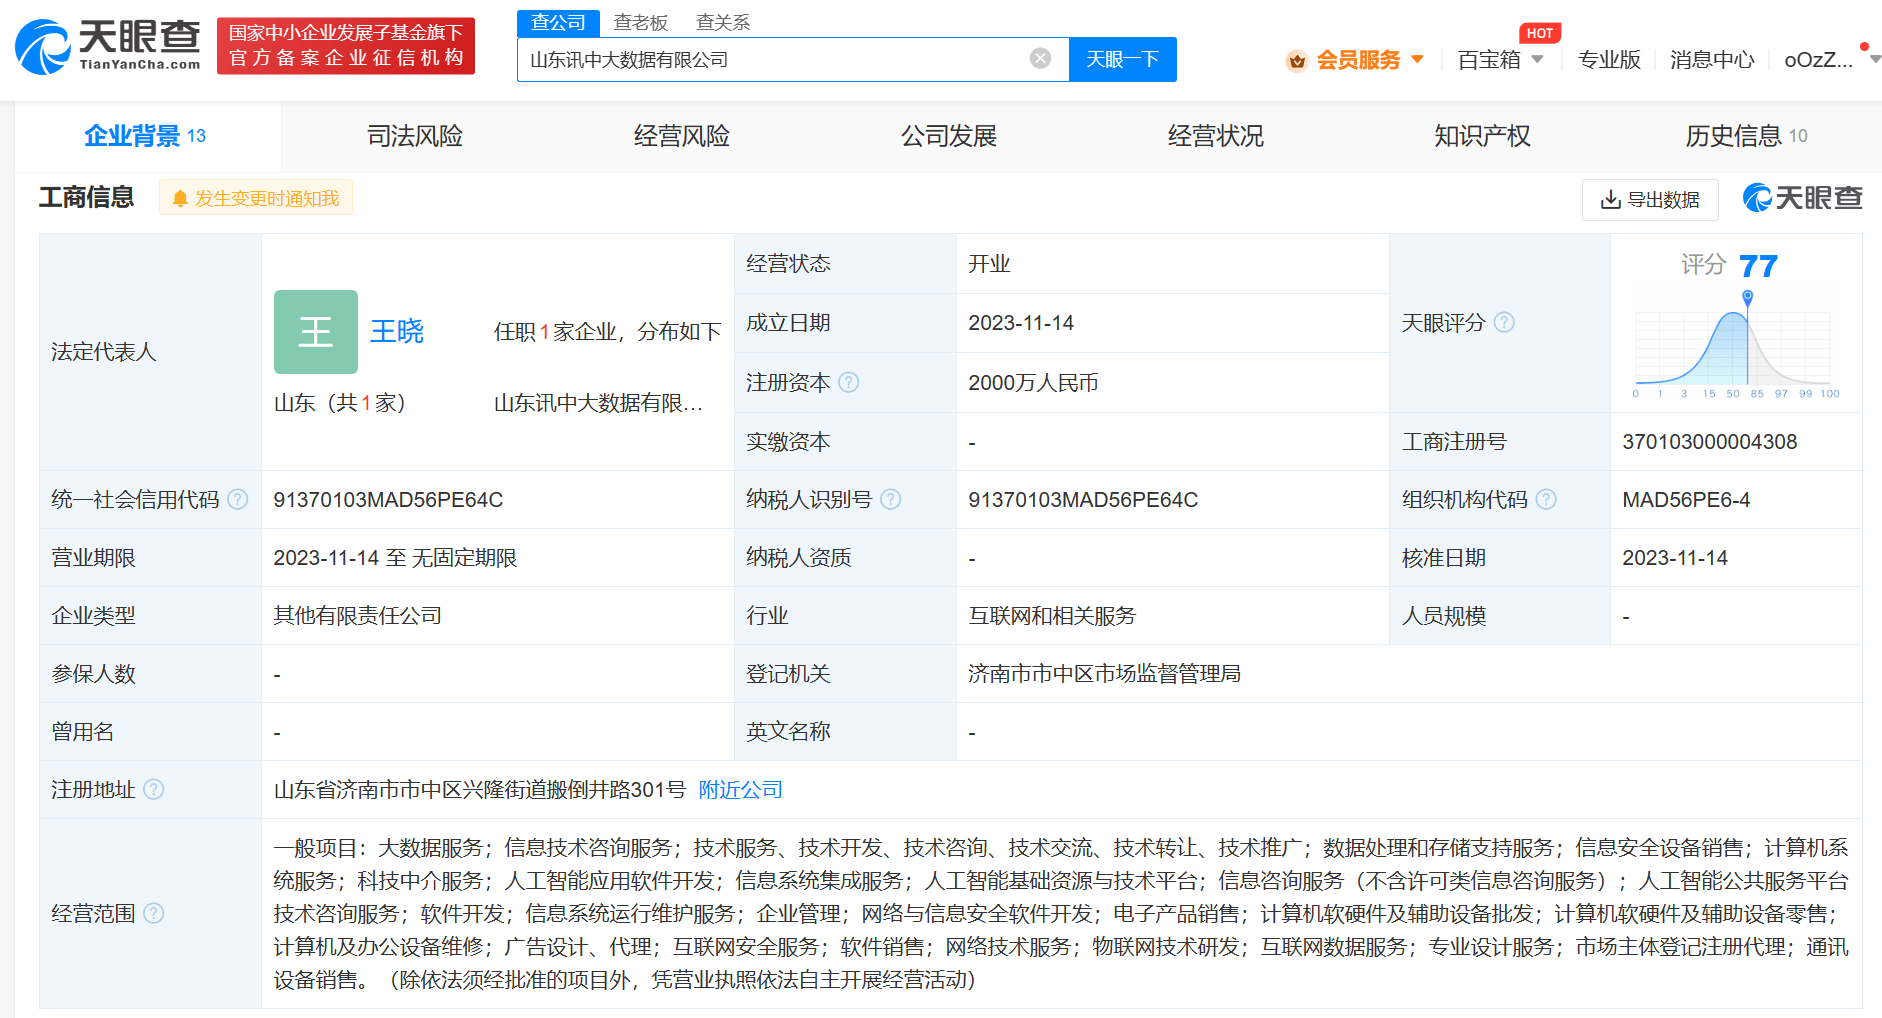 科大讯飞等在山东成立大数据公司 注册资本2000万